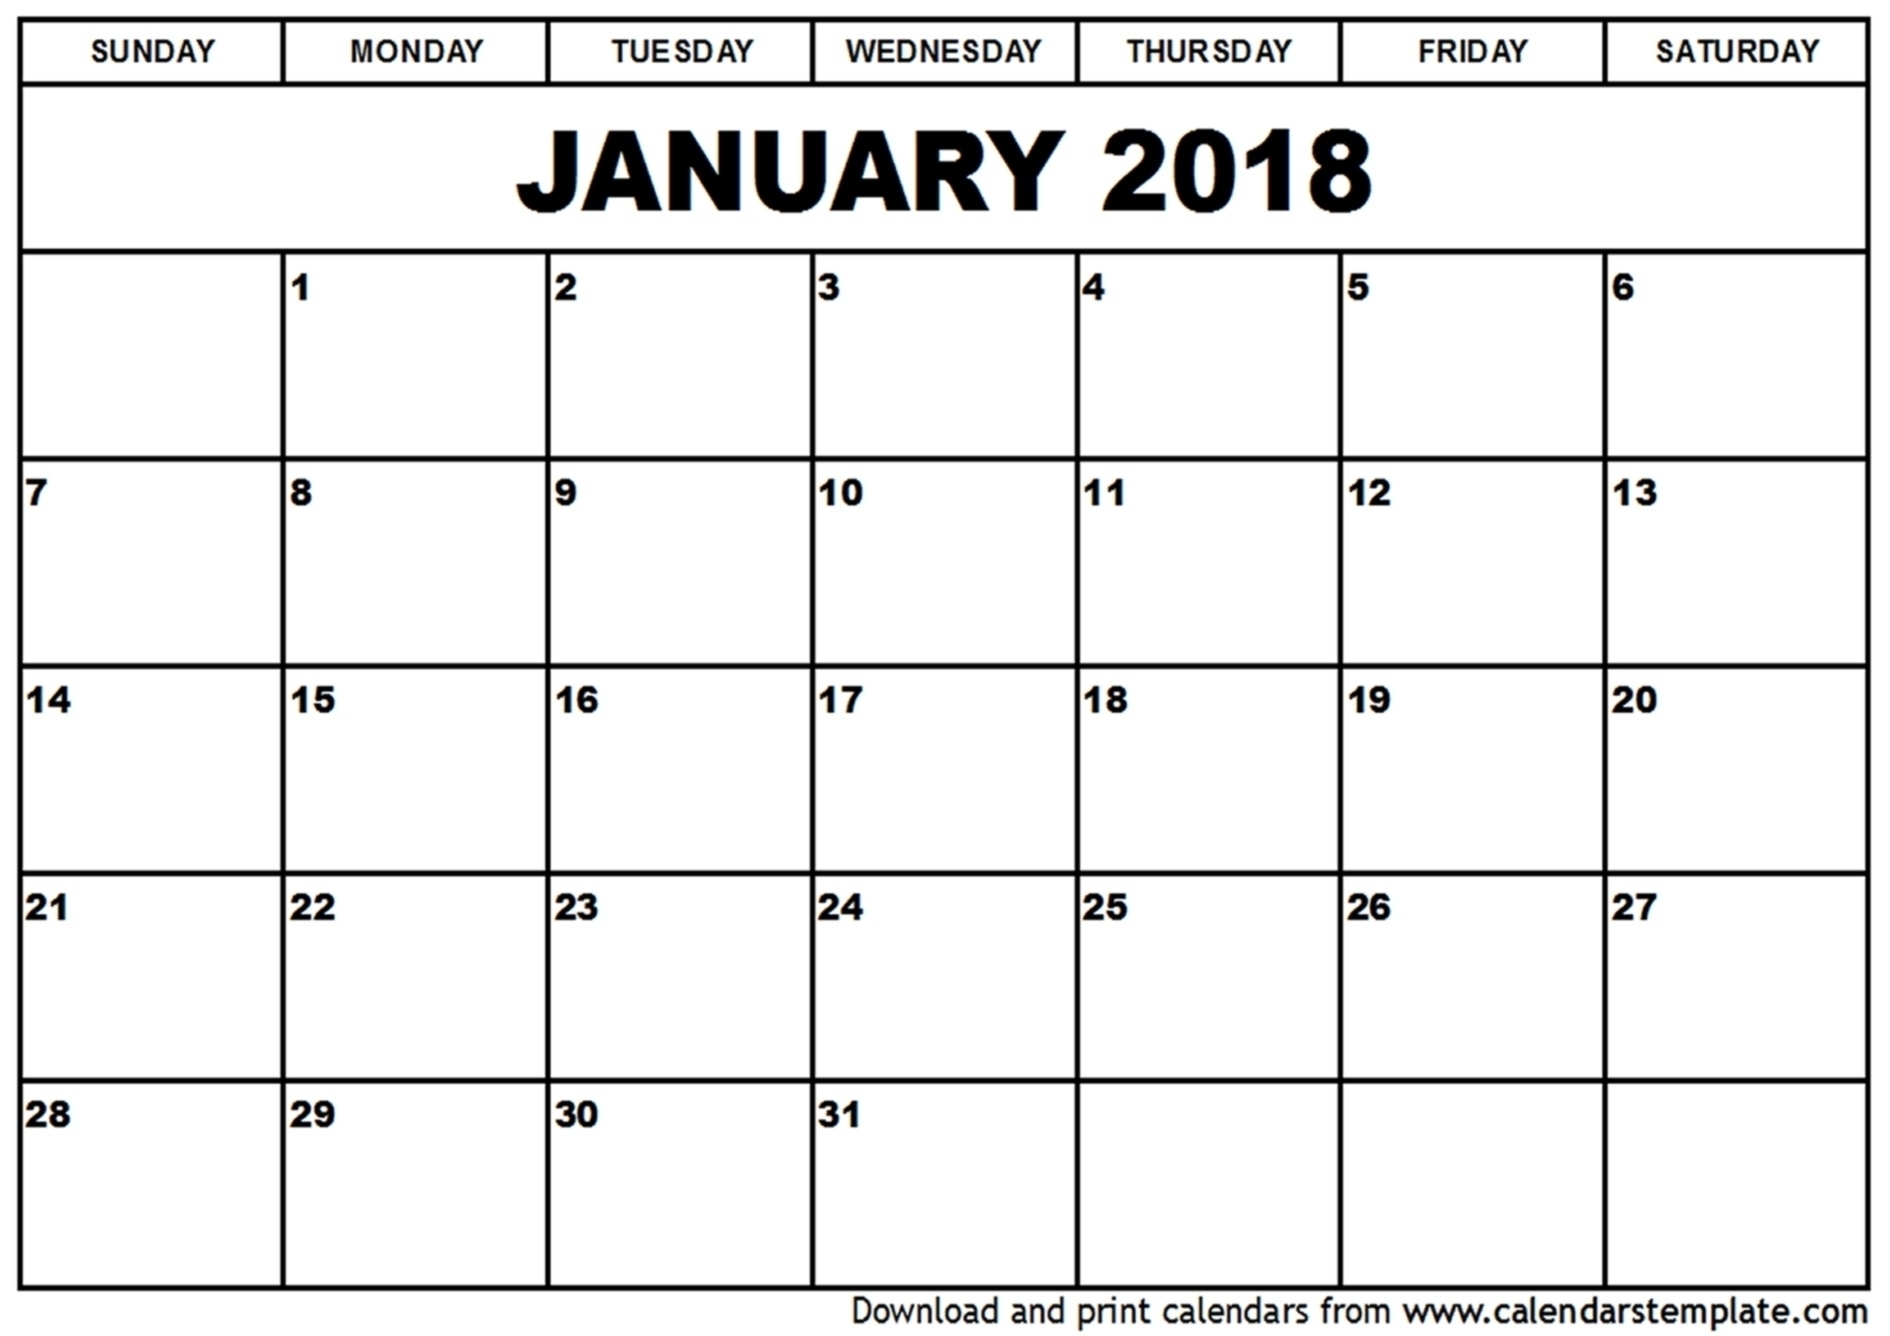 12 Month Calendar To Print | Template Calendar Printable regarding 12 Month Calendar To Print